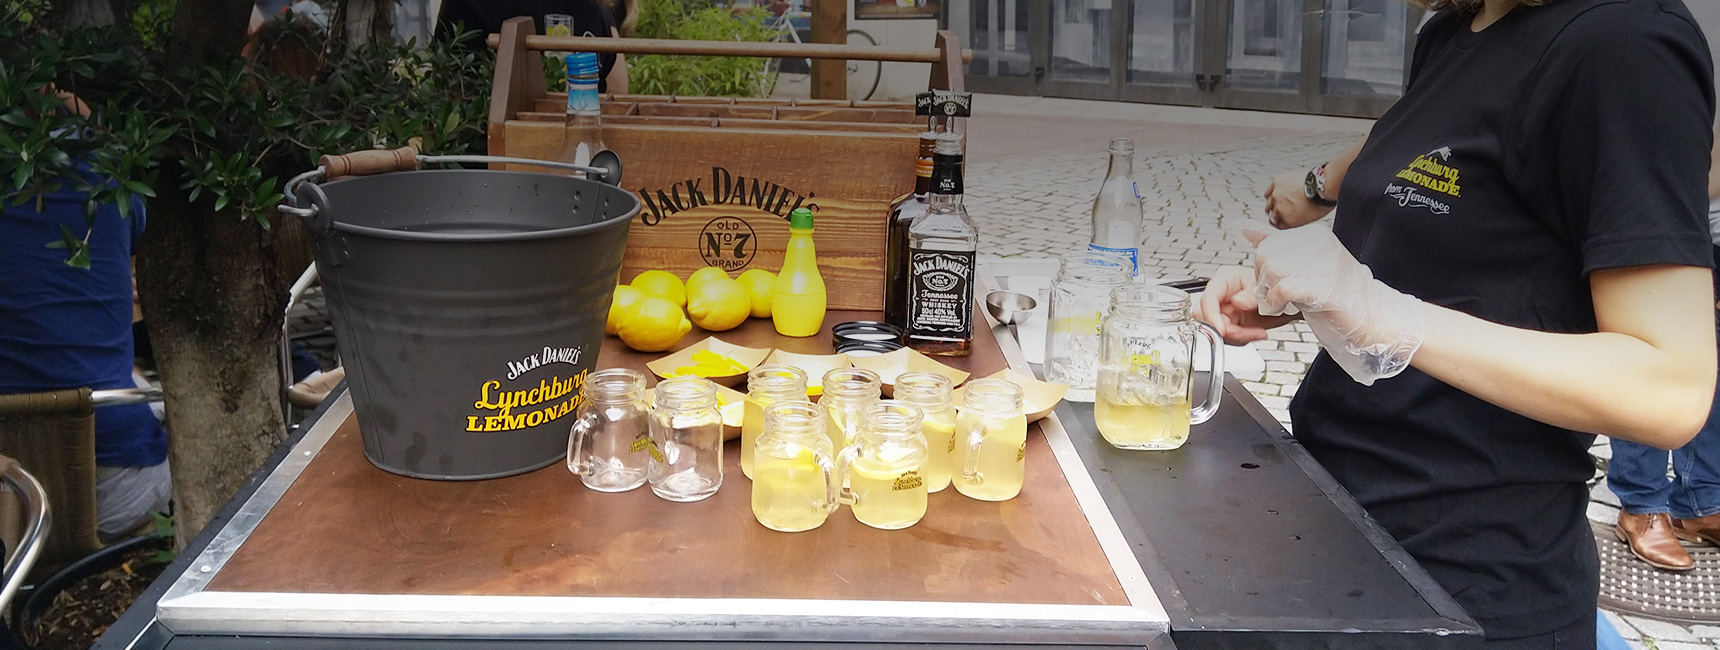 Animation outstore de dégustation pour découvrir le cocktail phare de Jack Daniels dans plus de 20 villes - Keemia Shopper Marketing - Agence d'activation shopper marketing phygitale